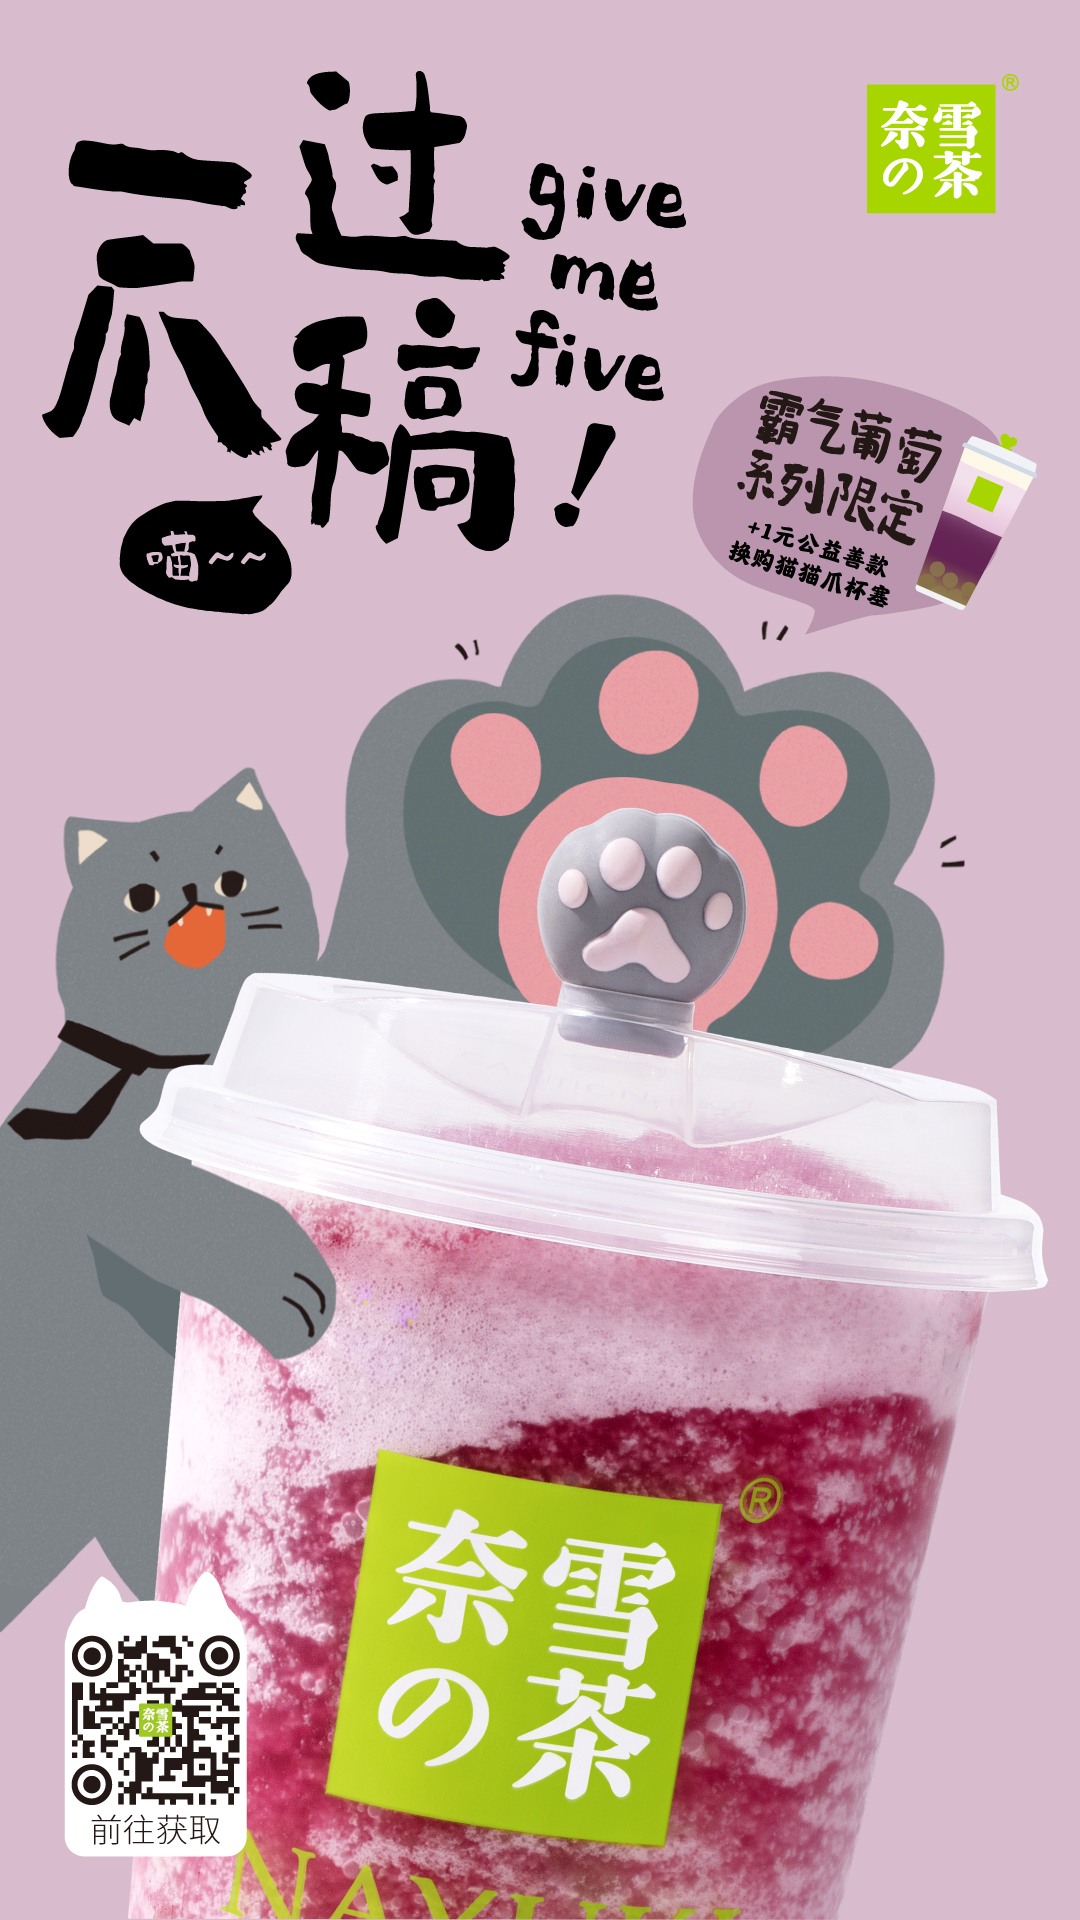 配合奈雪的茶猫爪型杯塞推出的系列海报,用儿童画般的笔触画出软萌的